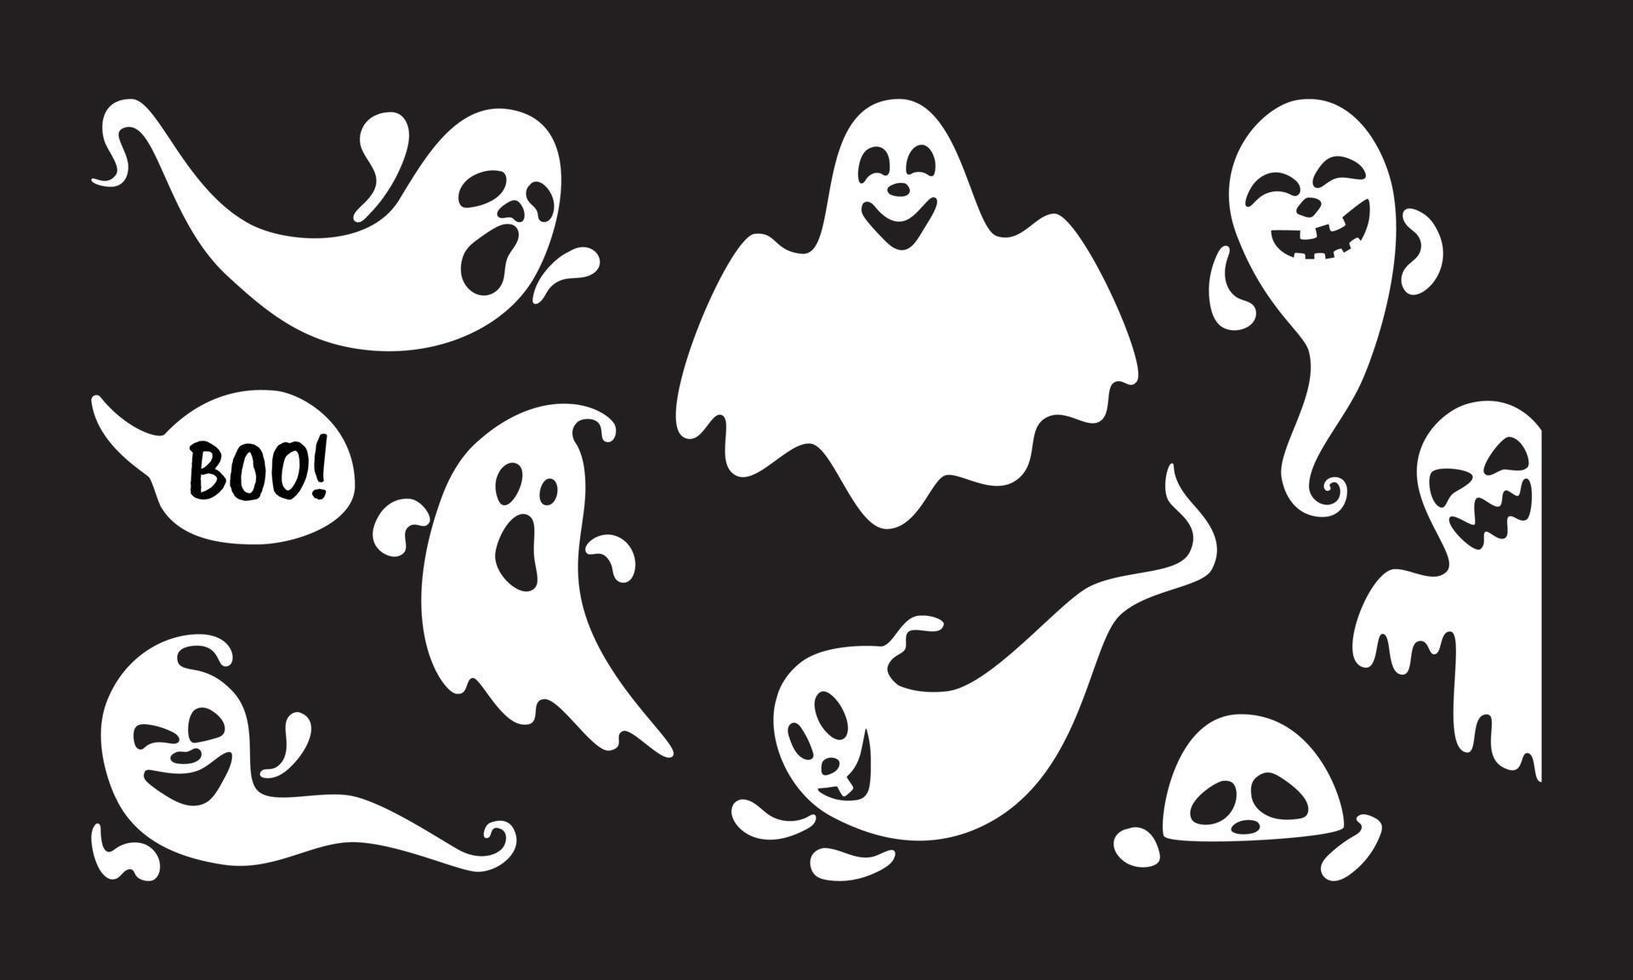 söta spöke tecken platt stil design vektor illustration set isolerad på svart bakgrund.